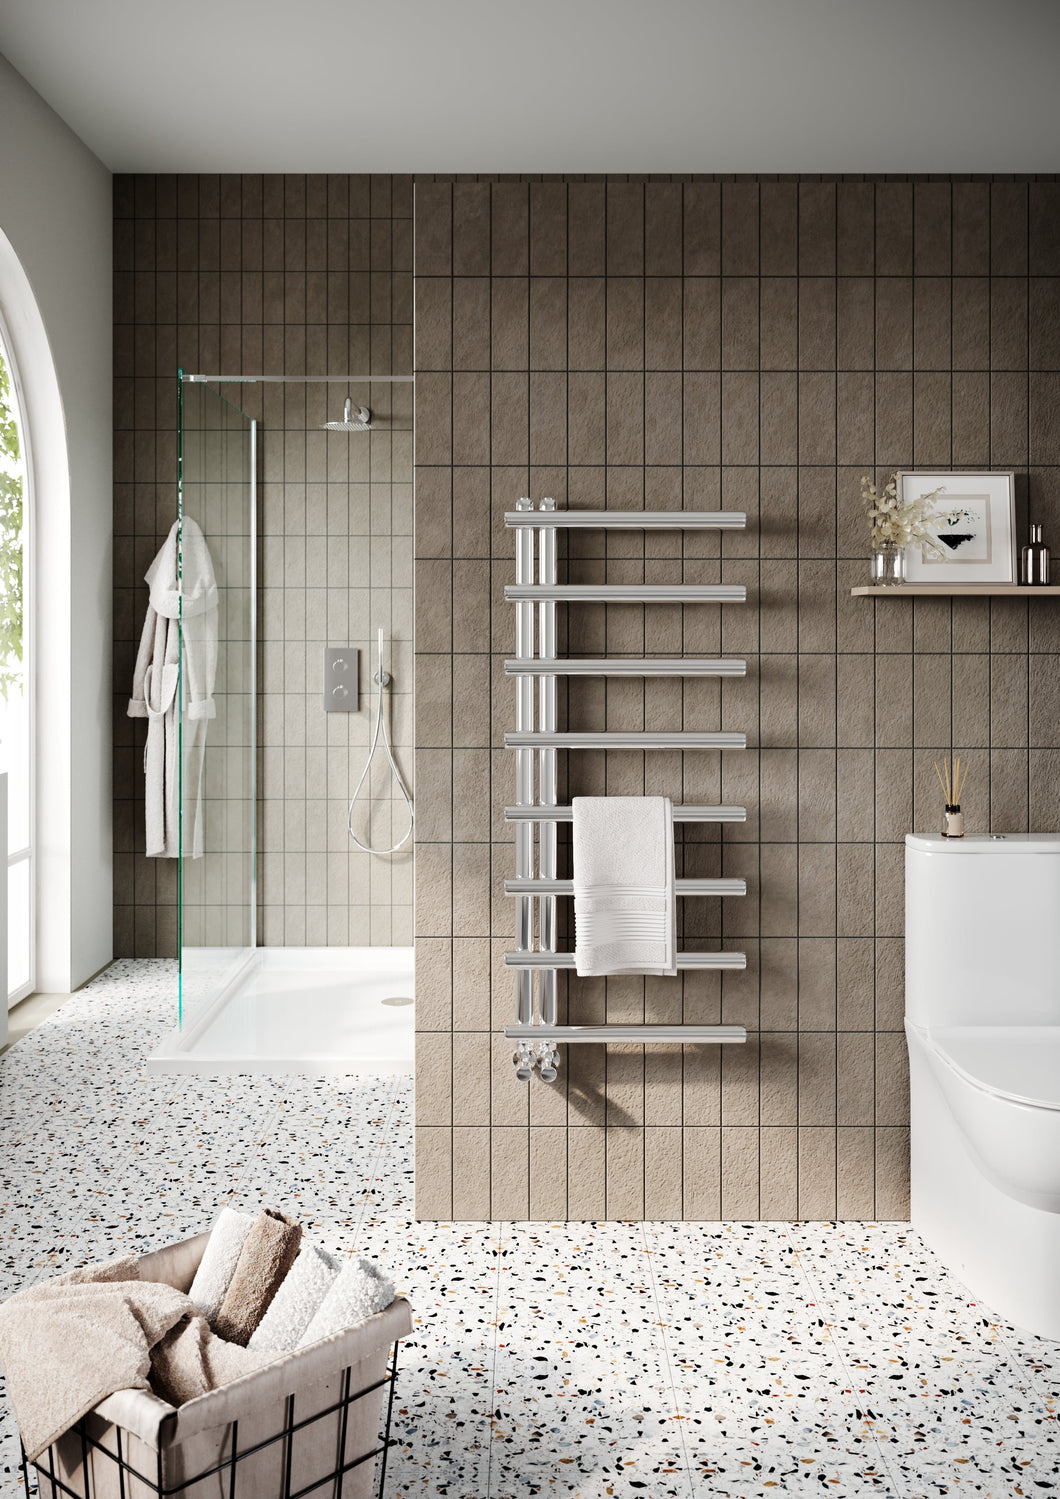 Vares-A - Arlo Designer Chrome Bathroom Towel Warmers - 850 X 500mm 904BTU